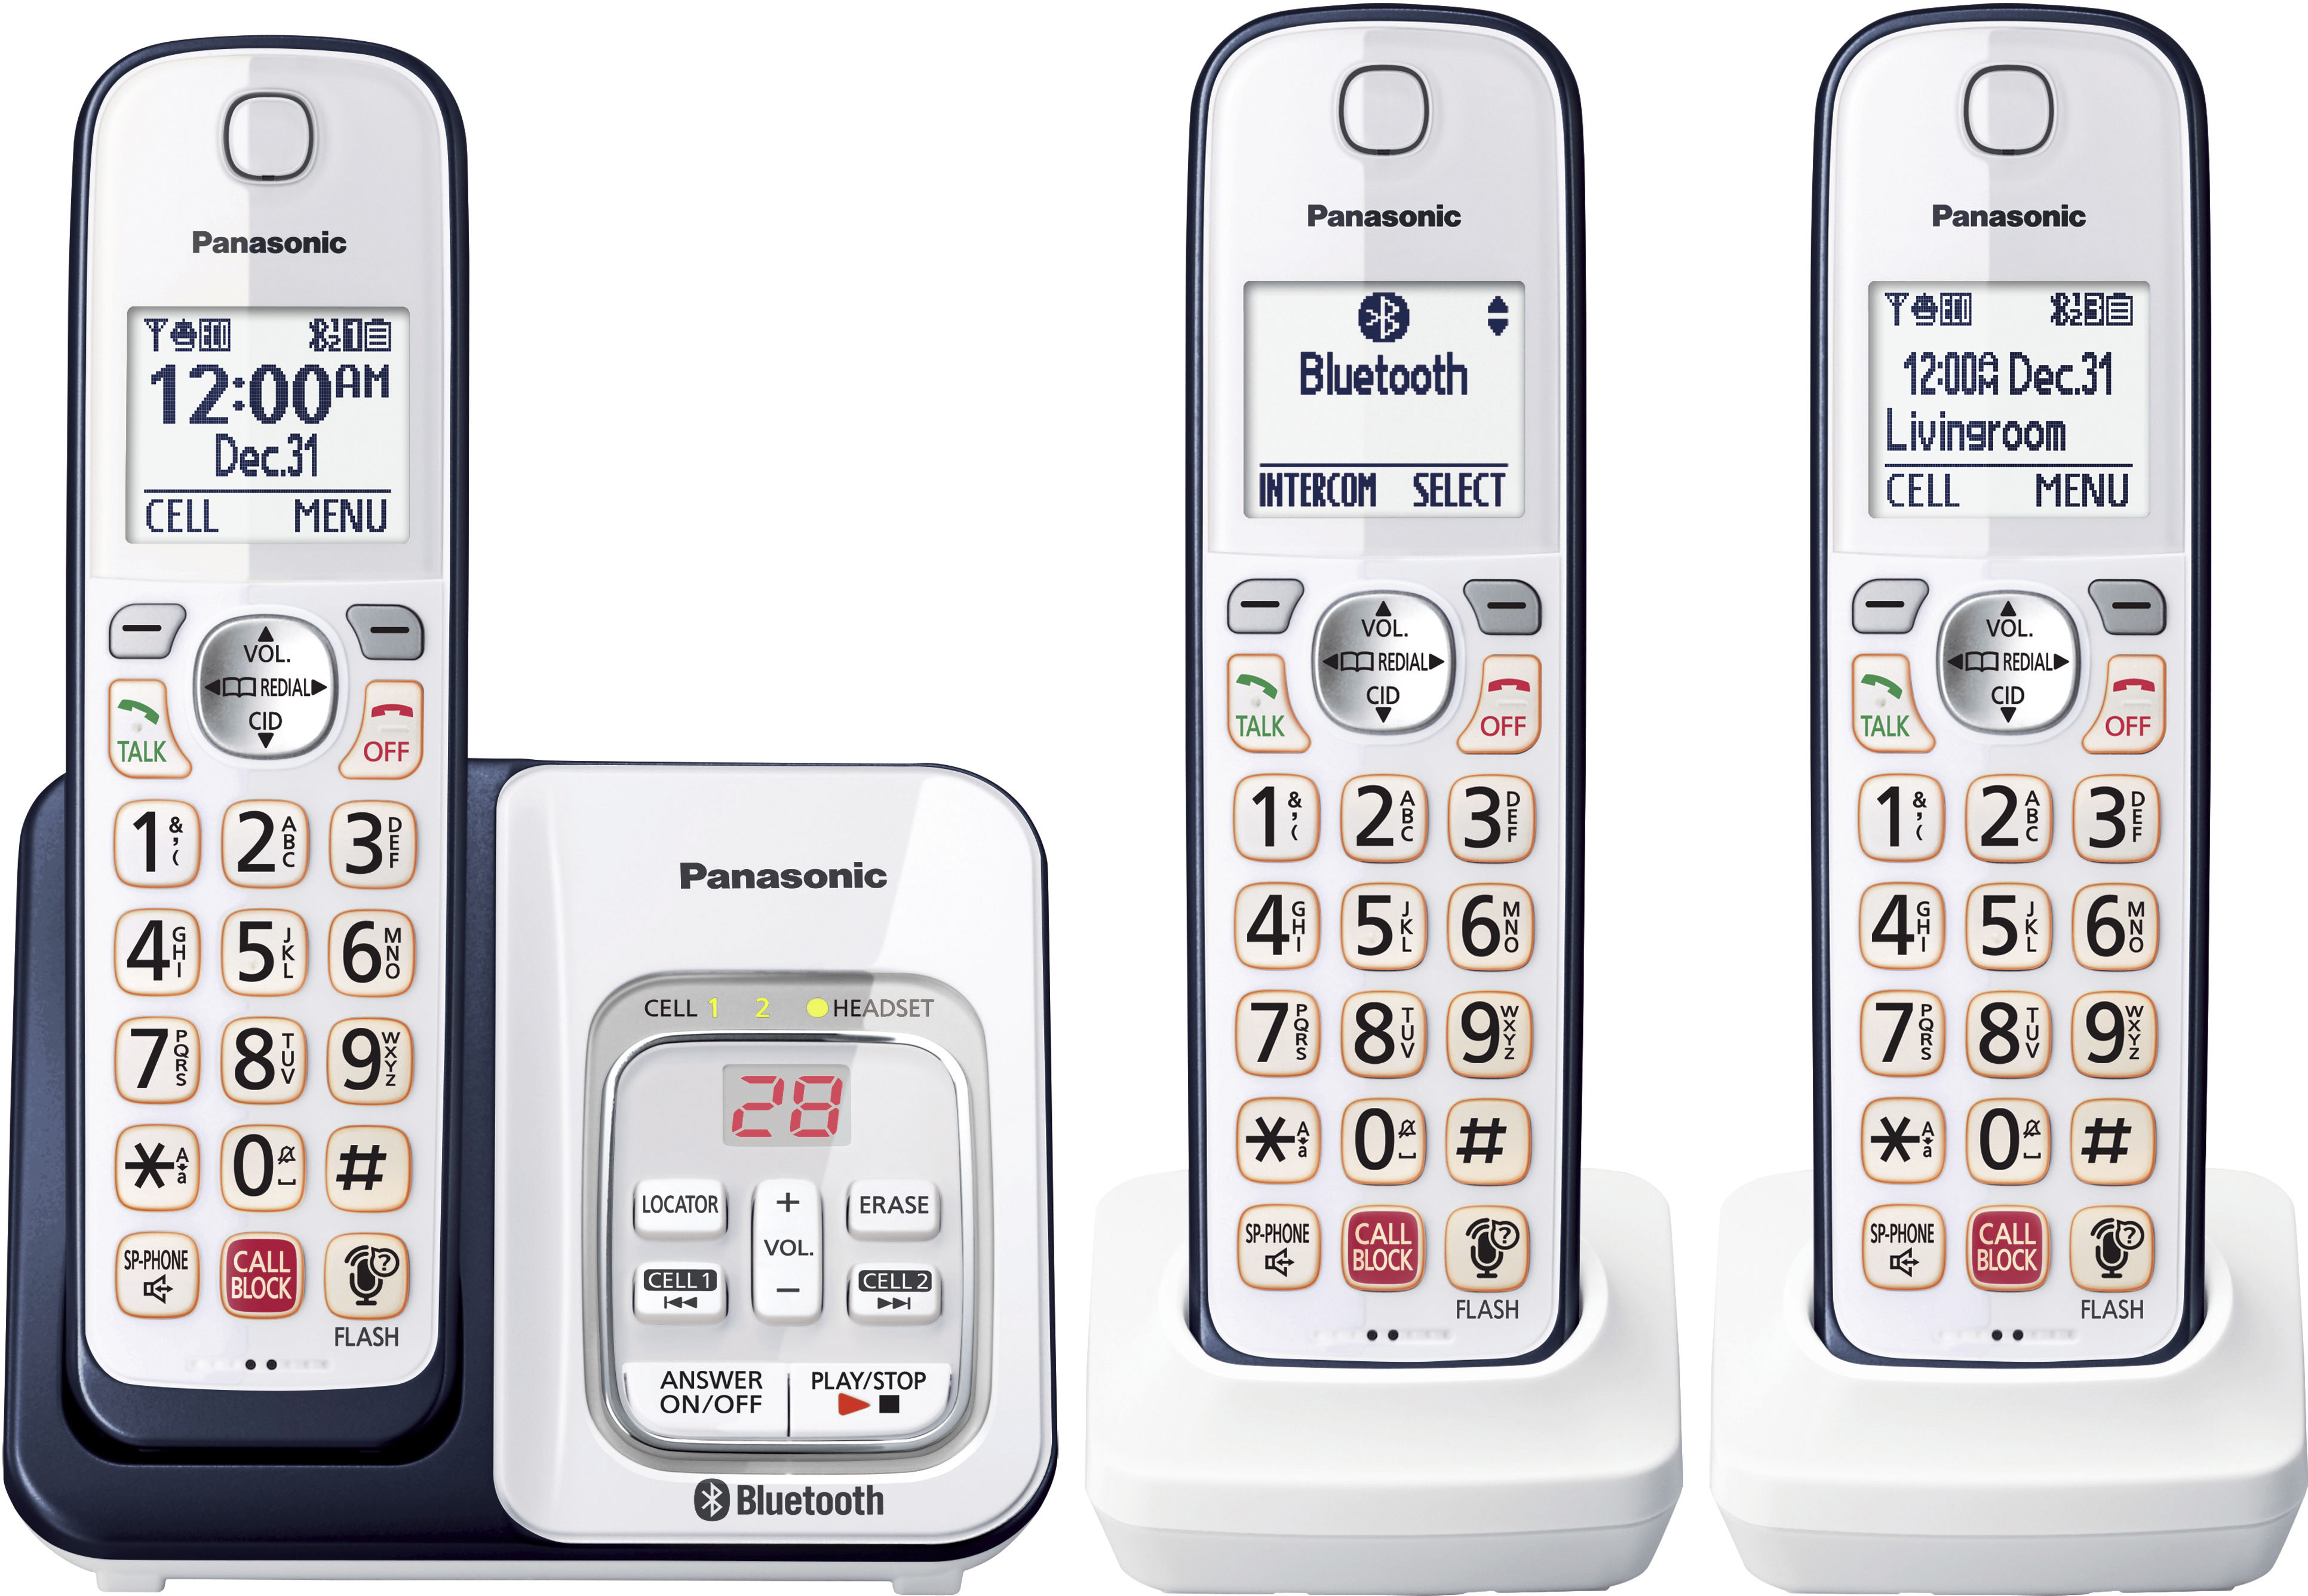 Panasonic Cordless Phone Comparison Review - DECT 6.0 Plus - Brice Center